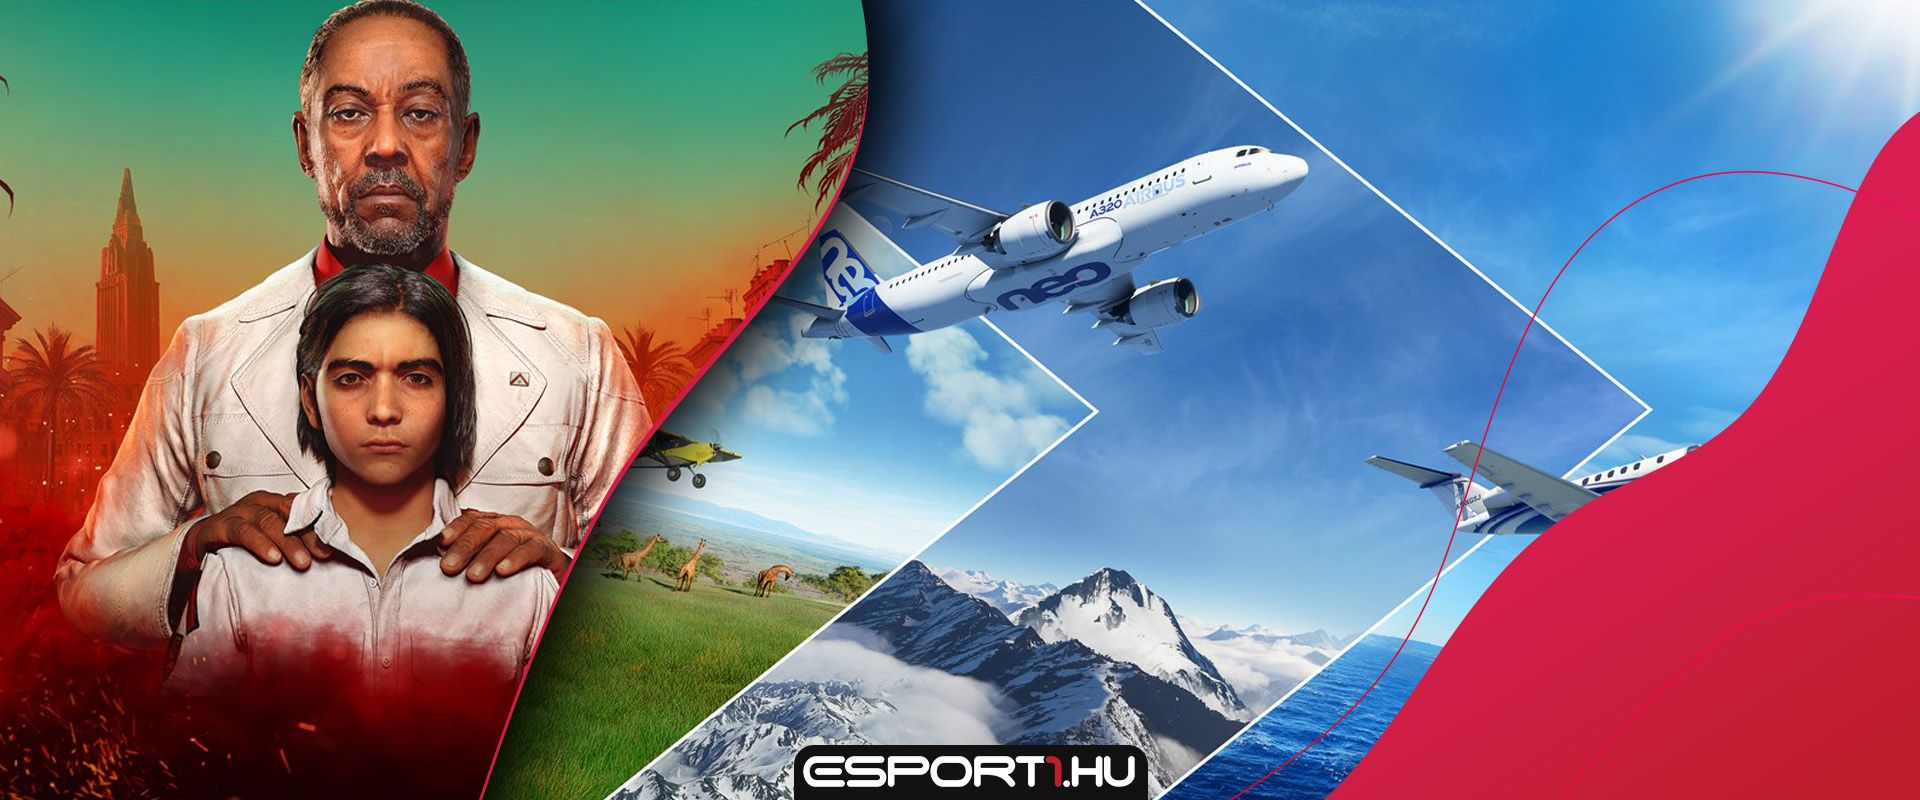 Különleges kiadásban dobják piacra a Far Cry 6-ot és a Microsoft Flight Simulator-t